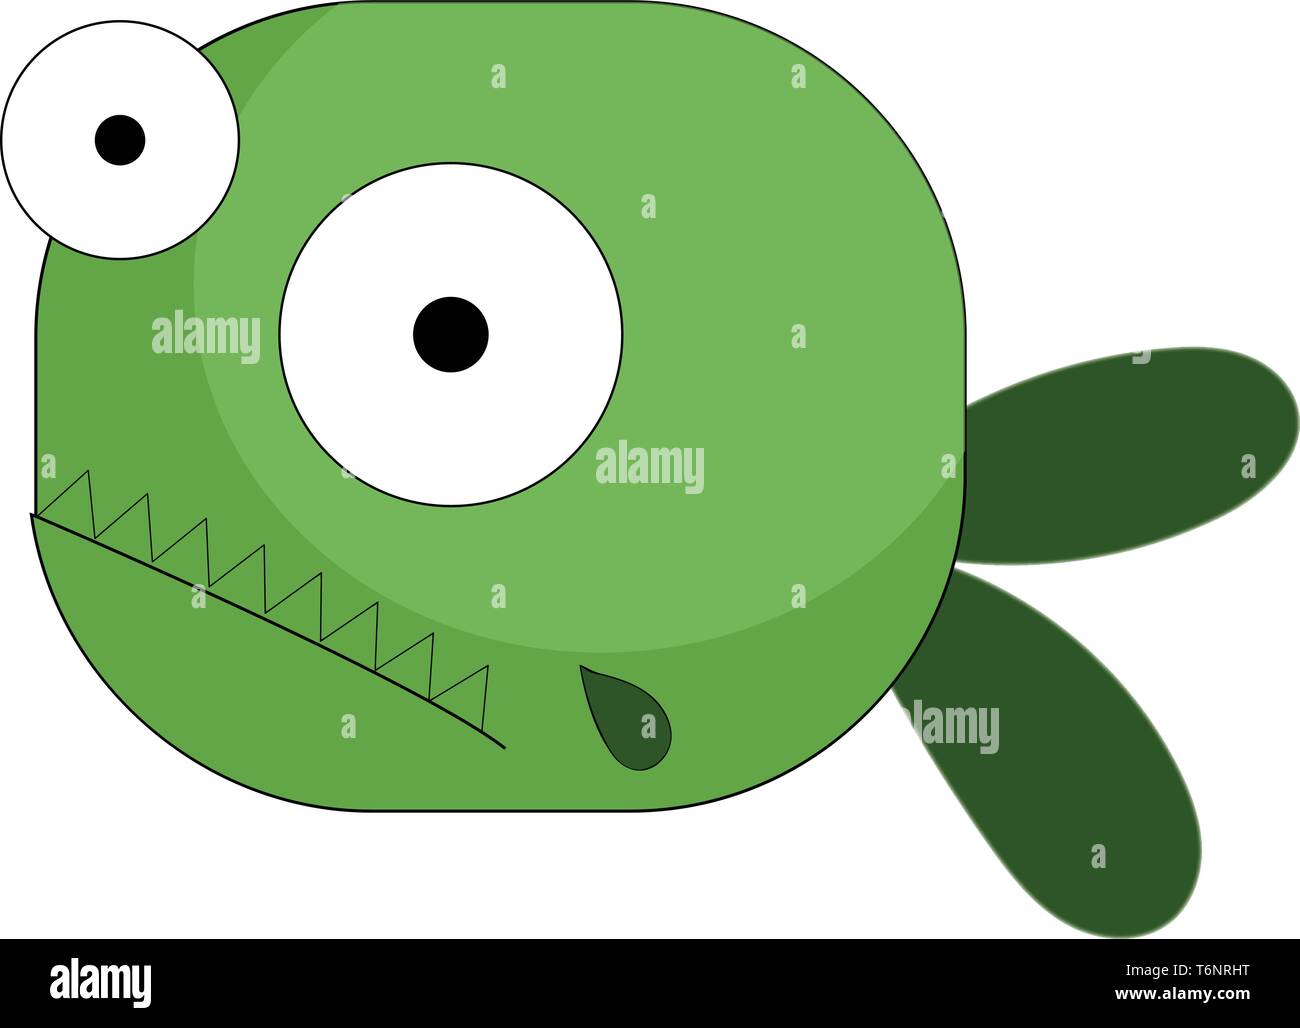 Fumetto di pesce verde con due occhi sporgenti coda biforcuta ha spike-come denti sporgenti verso l'esterno del vettore di disegno a colori o illustrazione Illustrazione Vettoriale